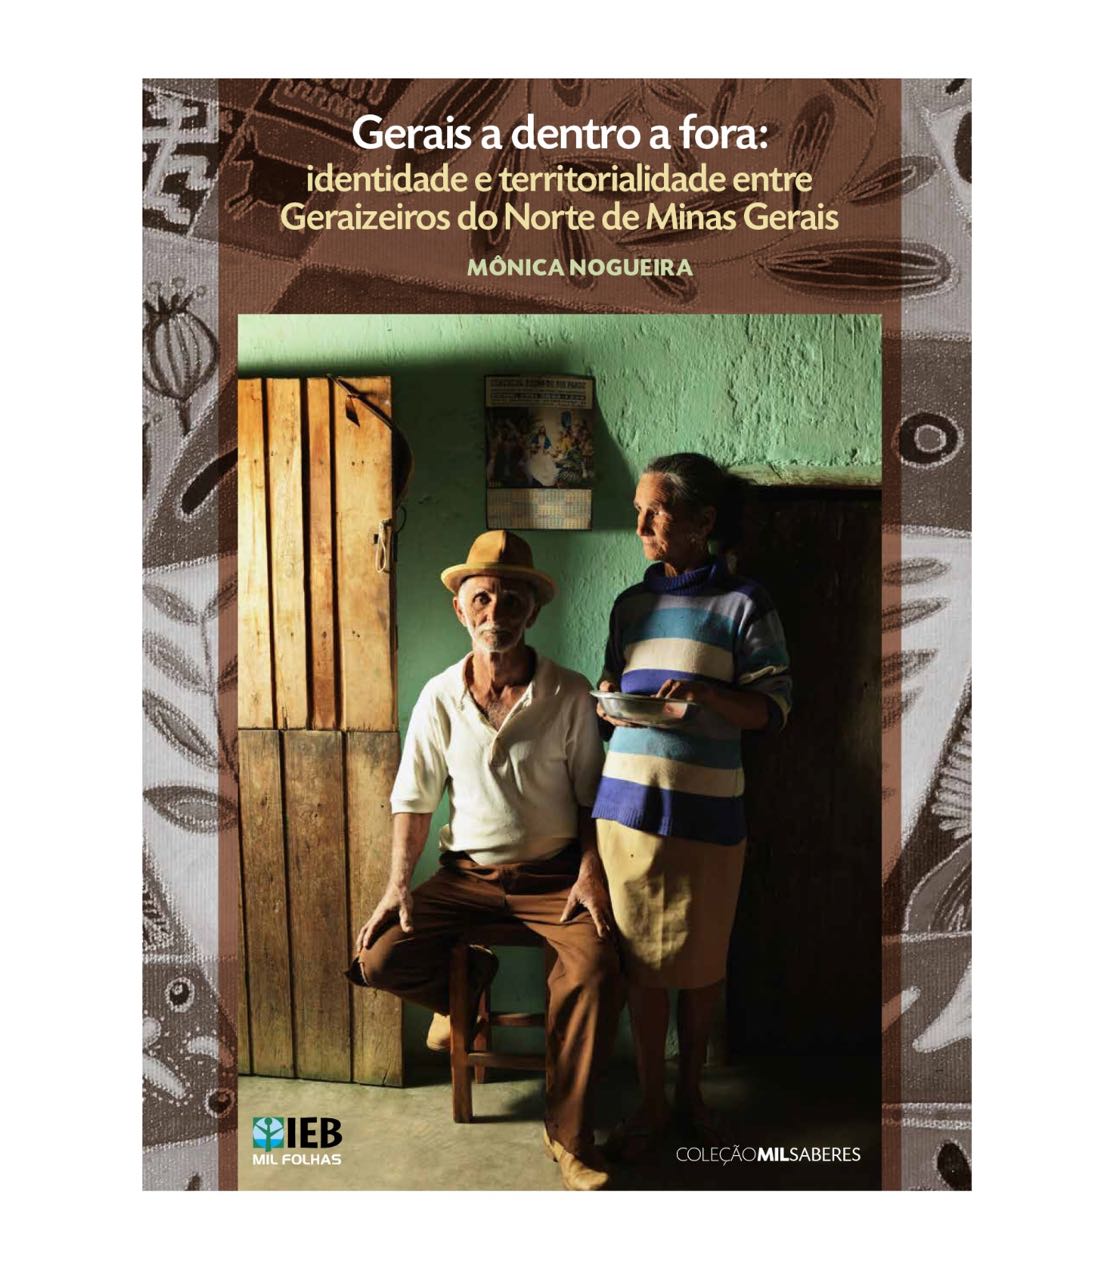 Gerais a dentro a fora: identidade e territorialidade entre Geraizeiros do Norte de Minas Gerais